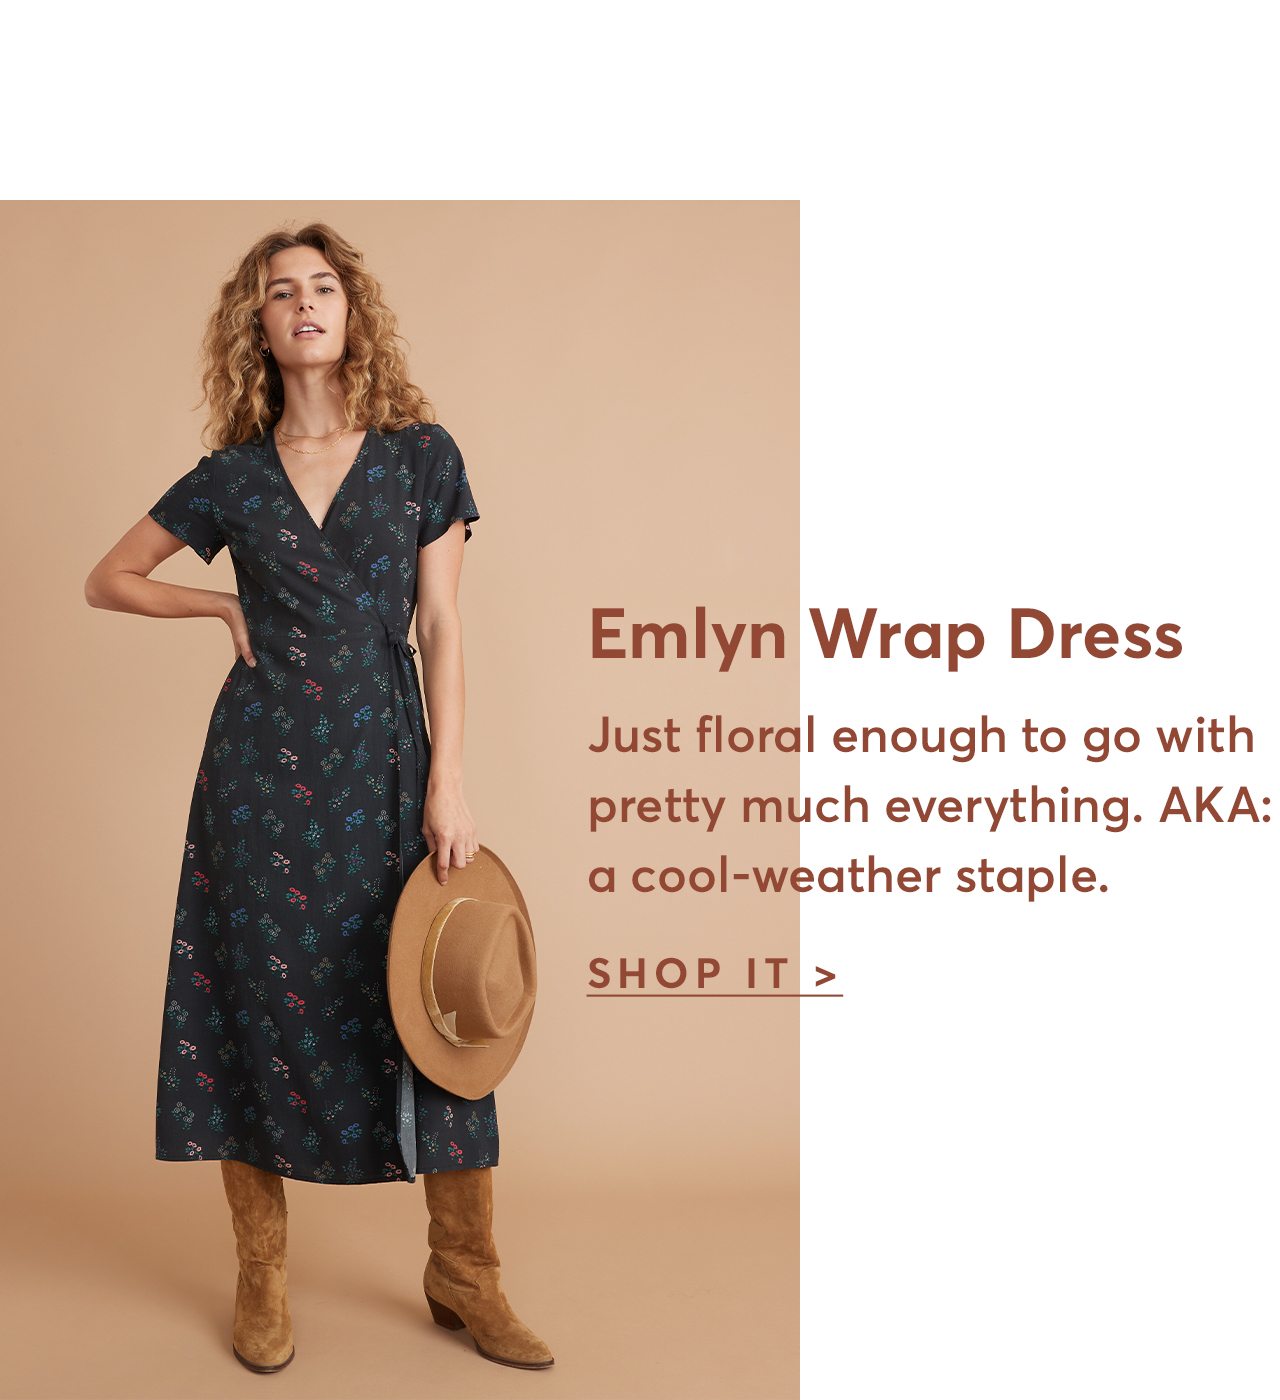 Emlyn Wrap Dress